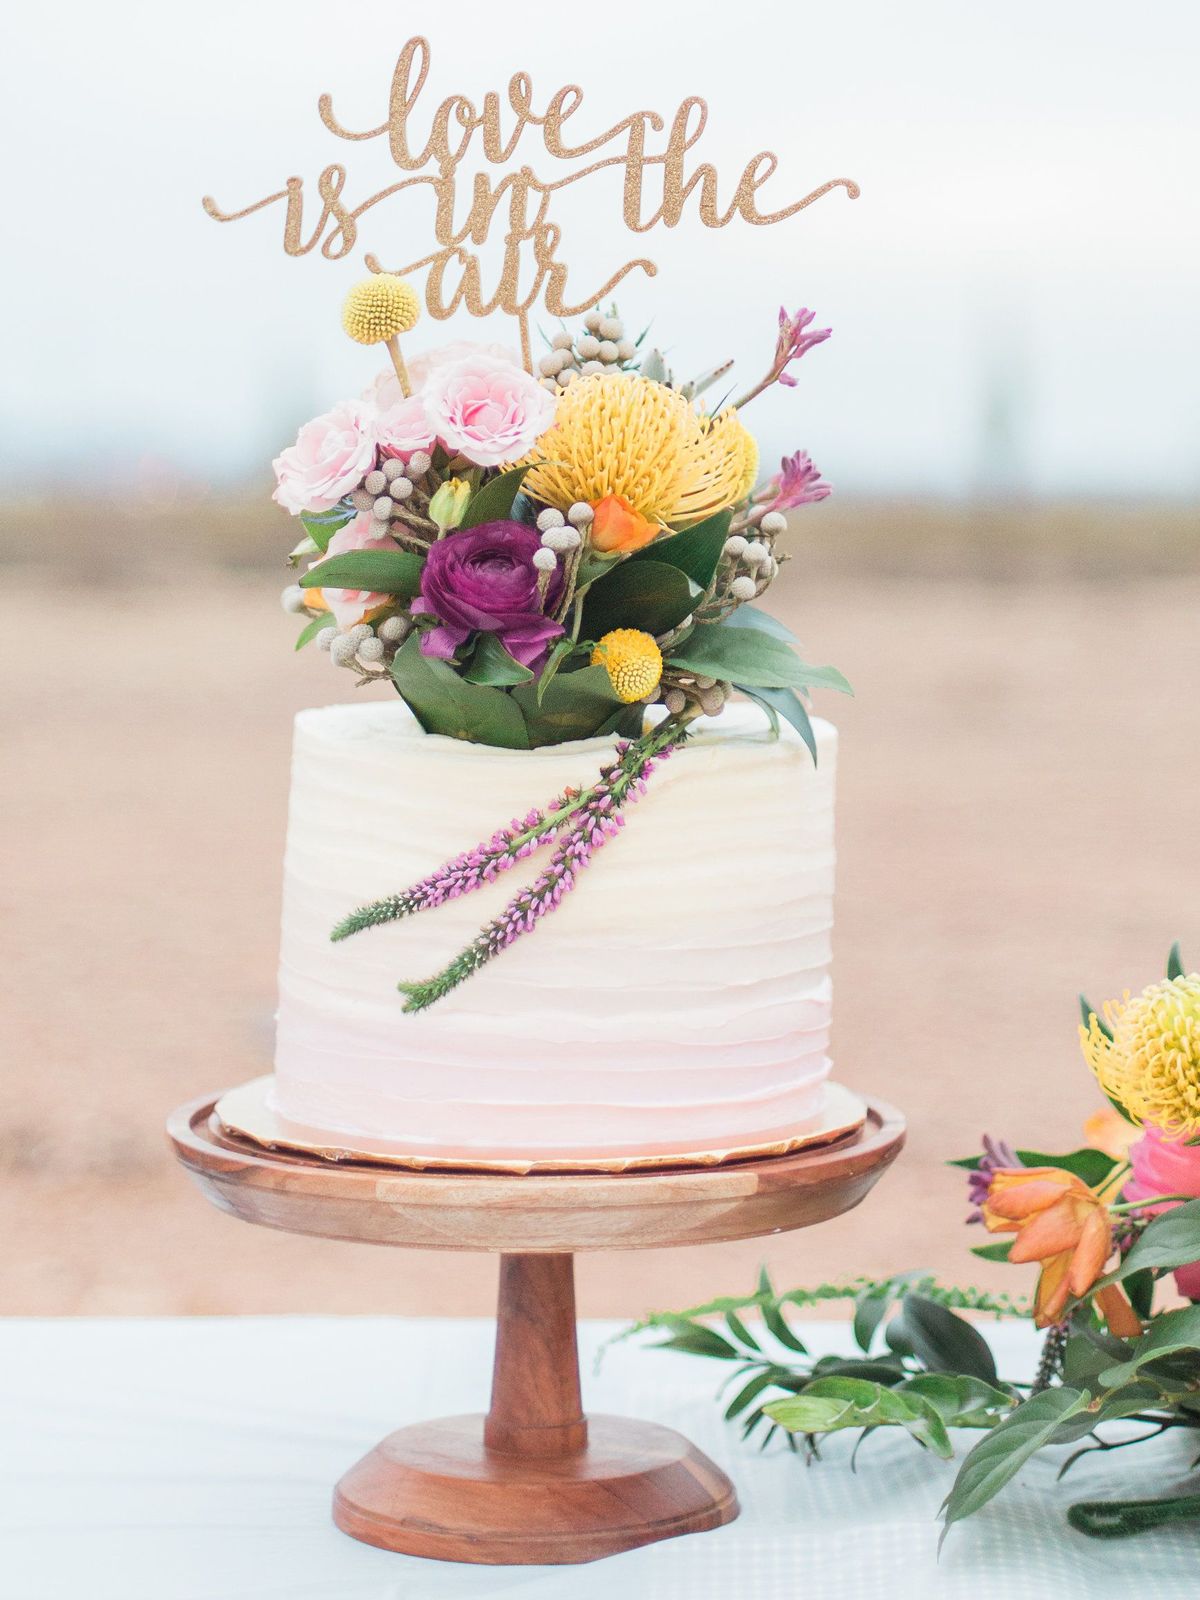 Тенденции свадебного торта 2019 года